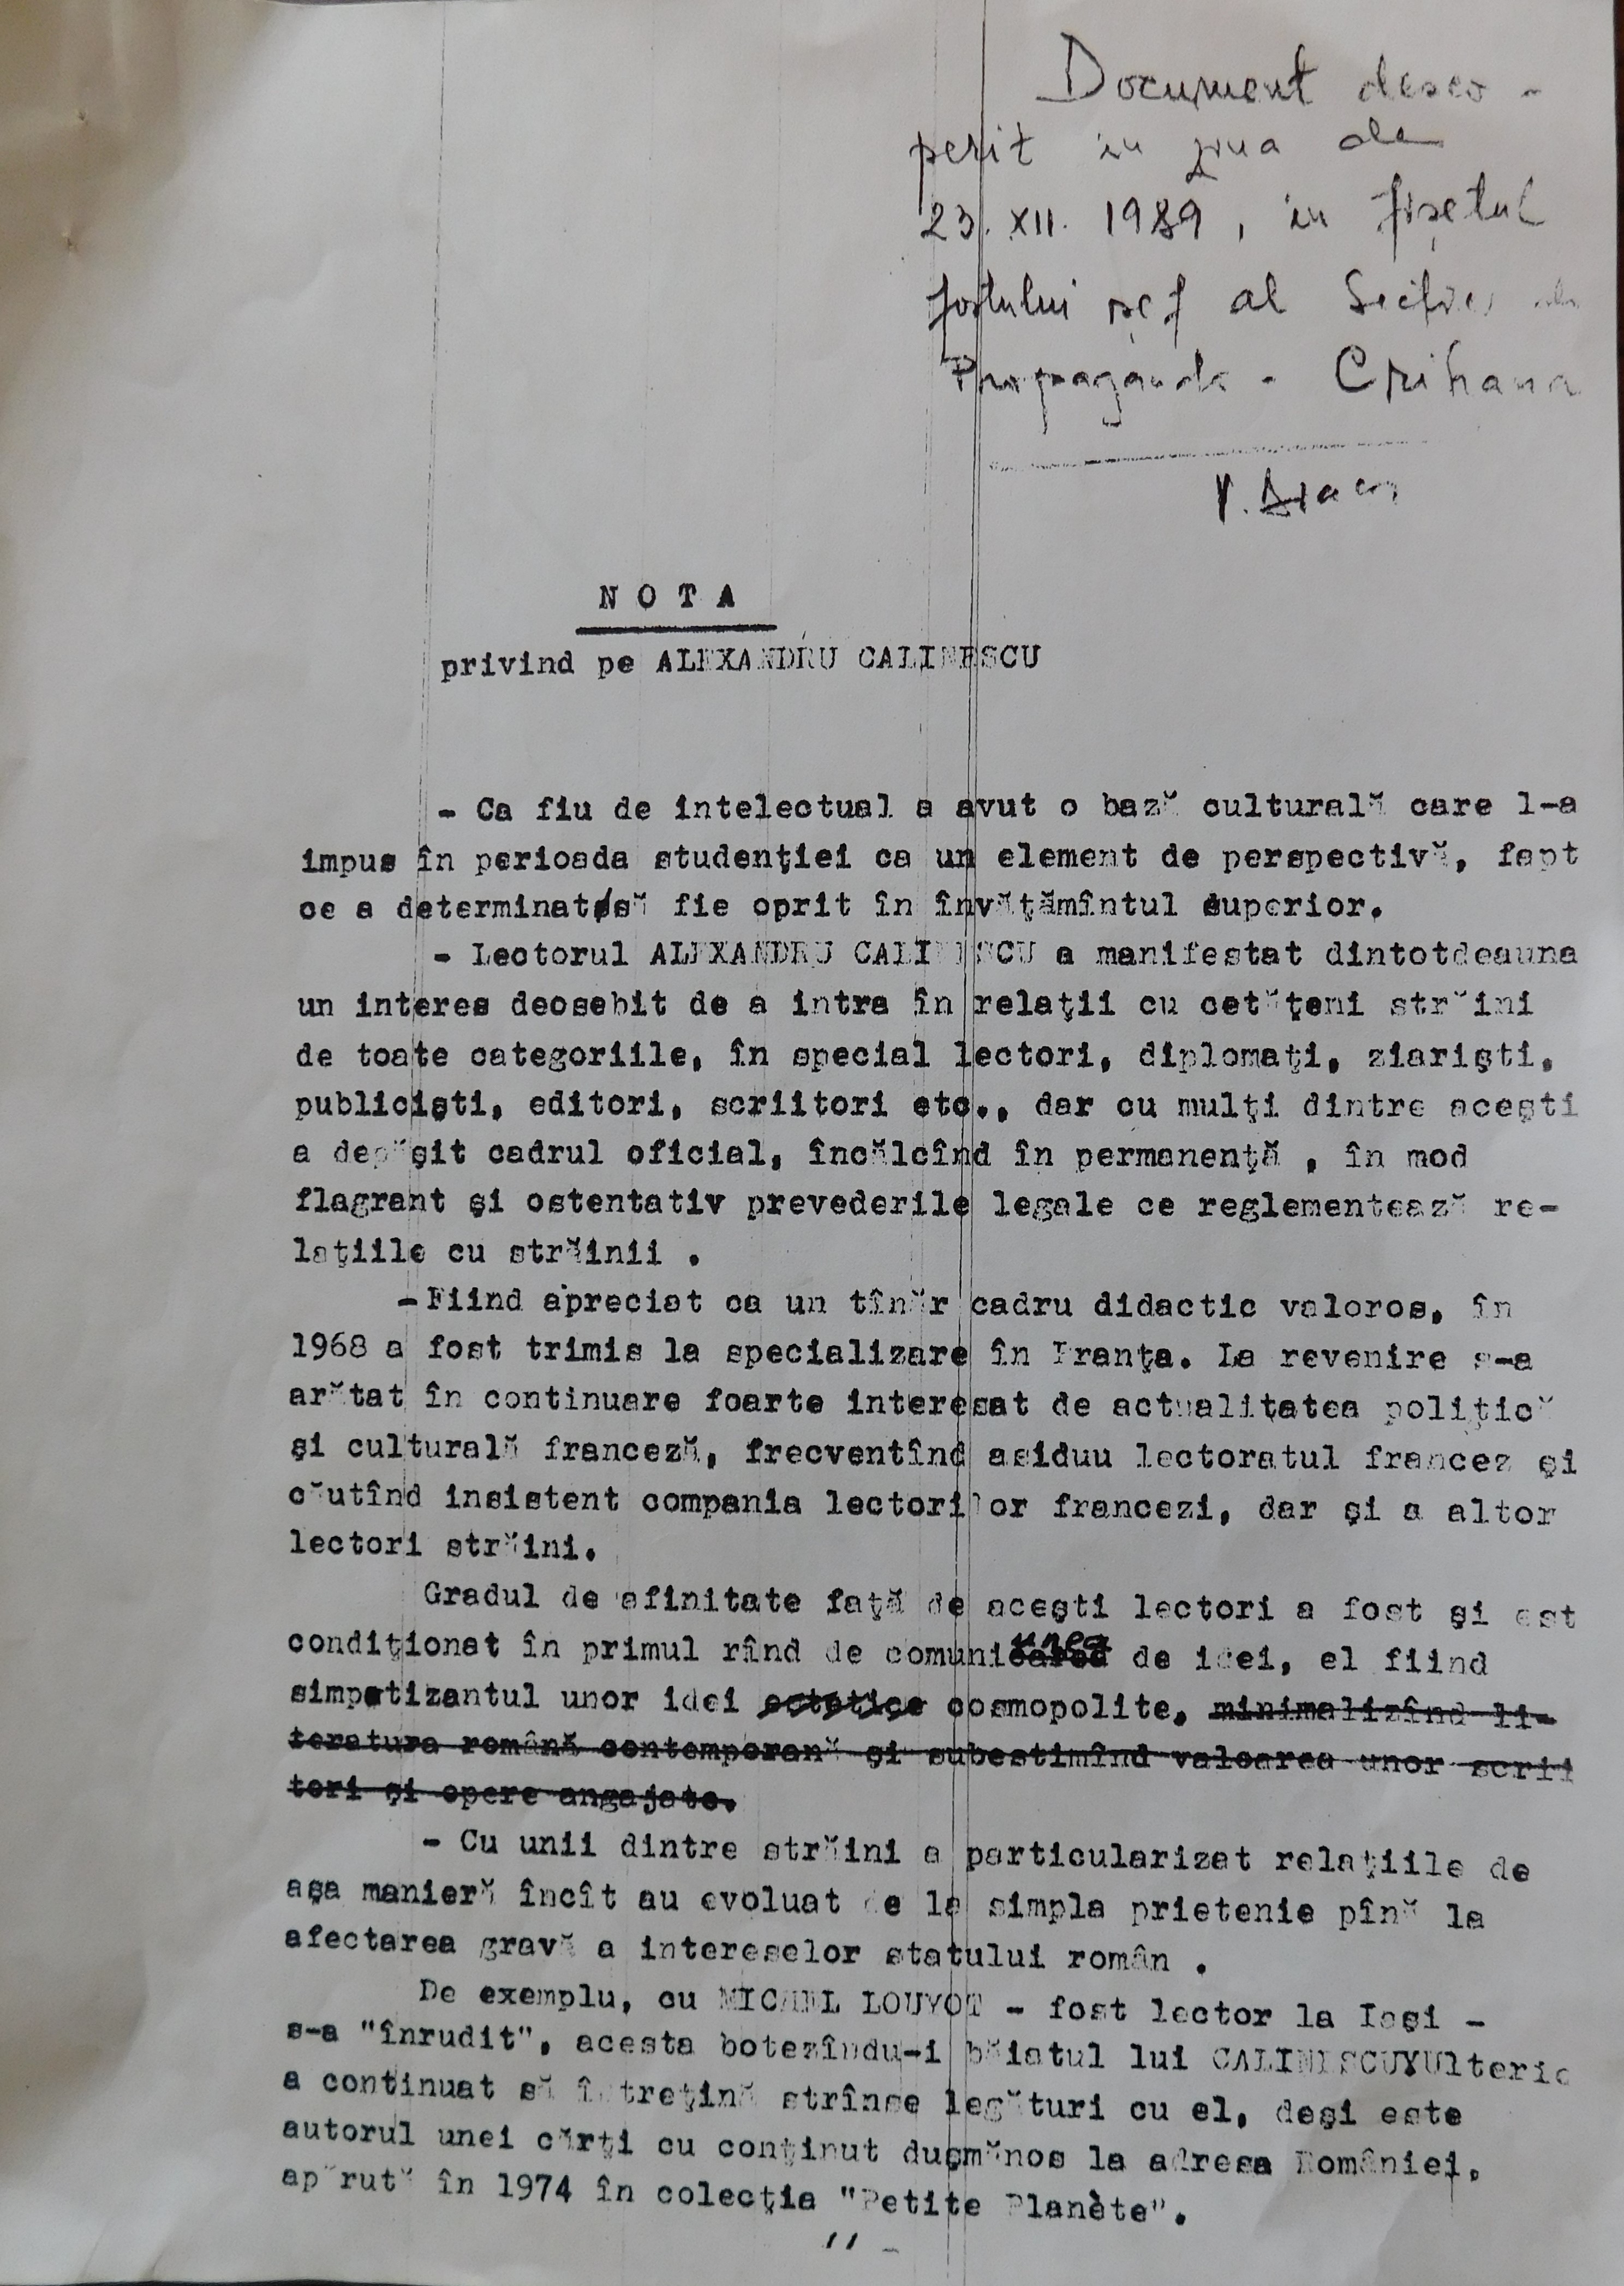 Informative note of the Securitate regarding Alexandru Călinescu, 1989